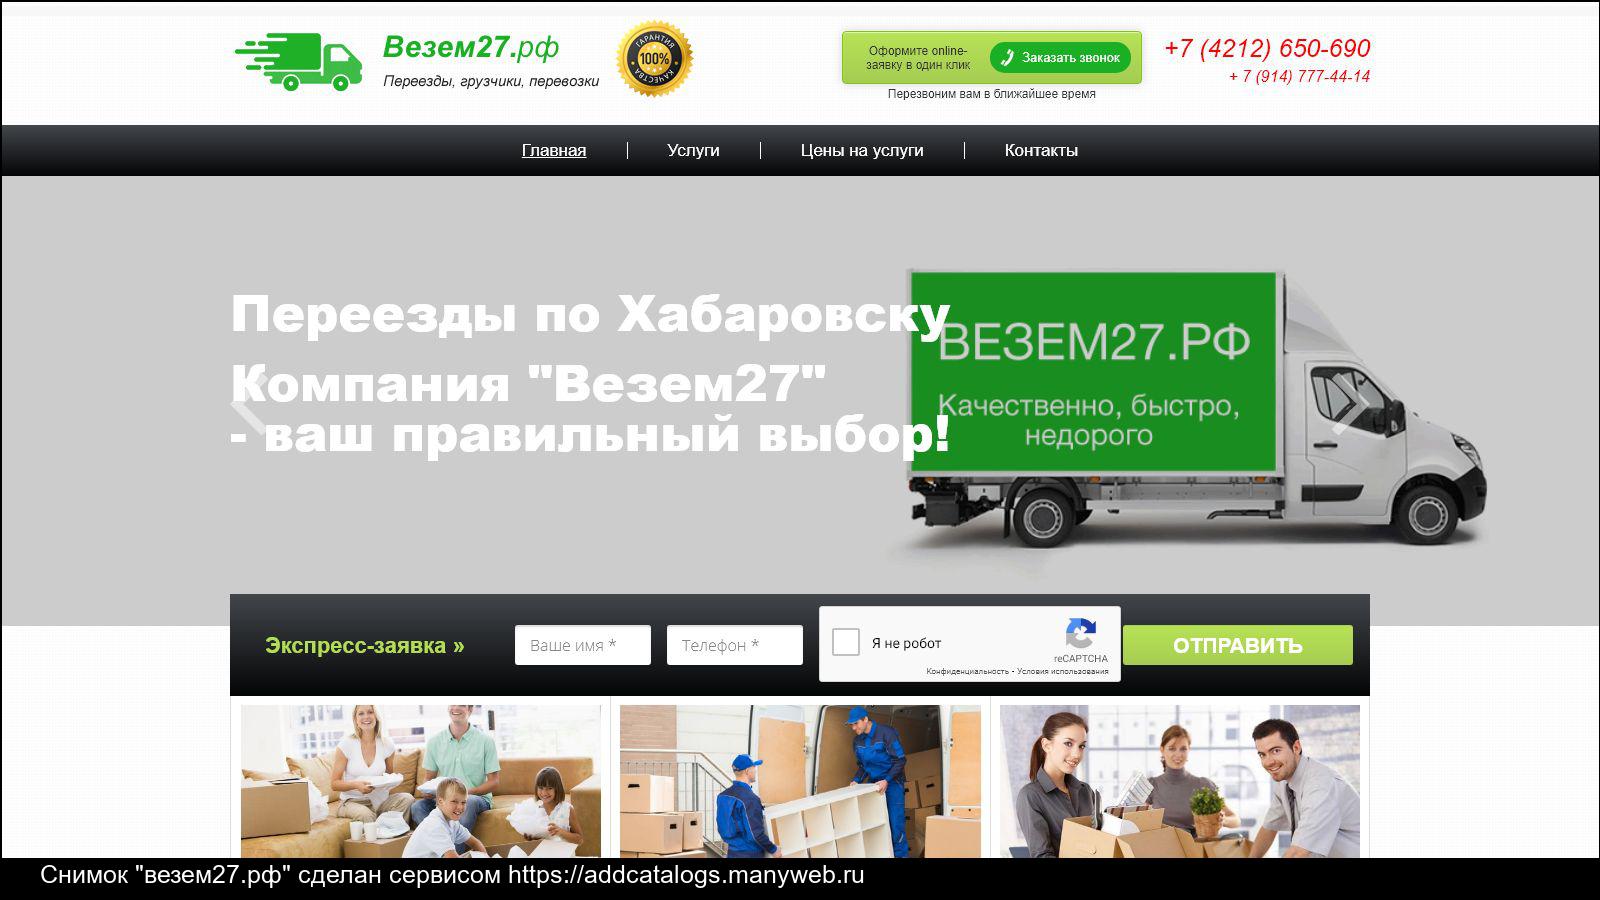 Компания «везёт всем» отзывы - грузоперевозки - первый независимый сайт отзывов россии